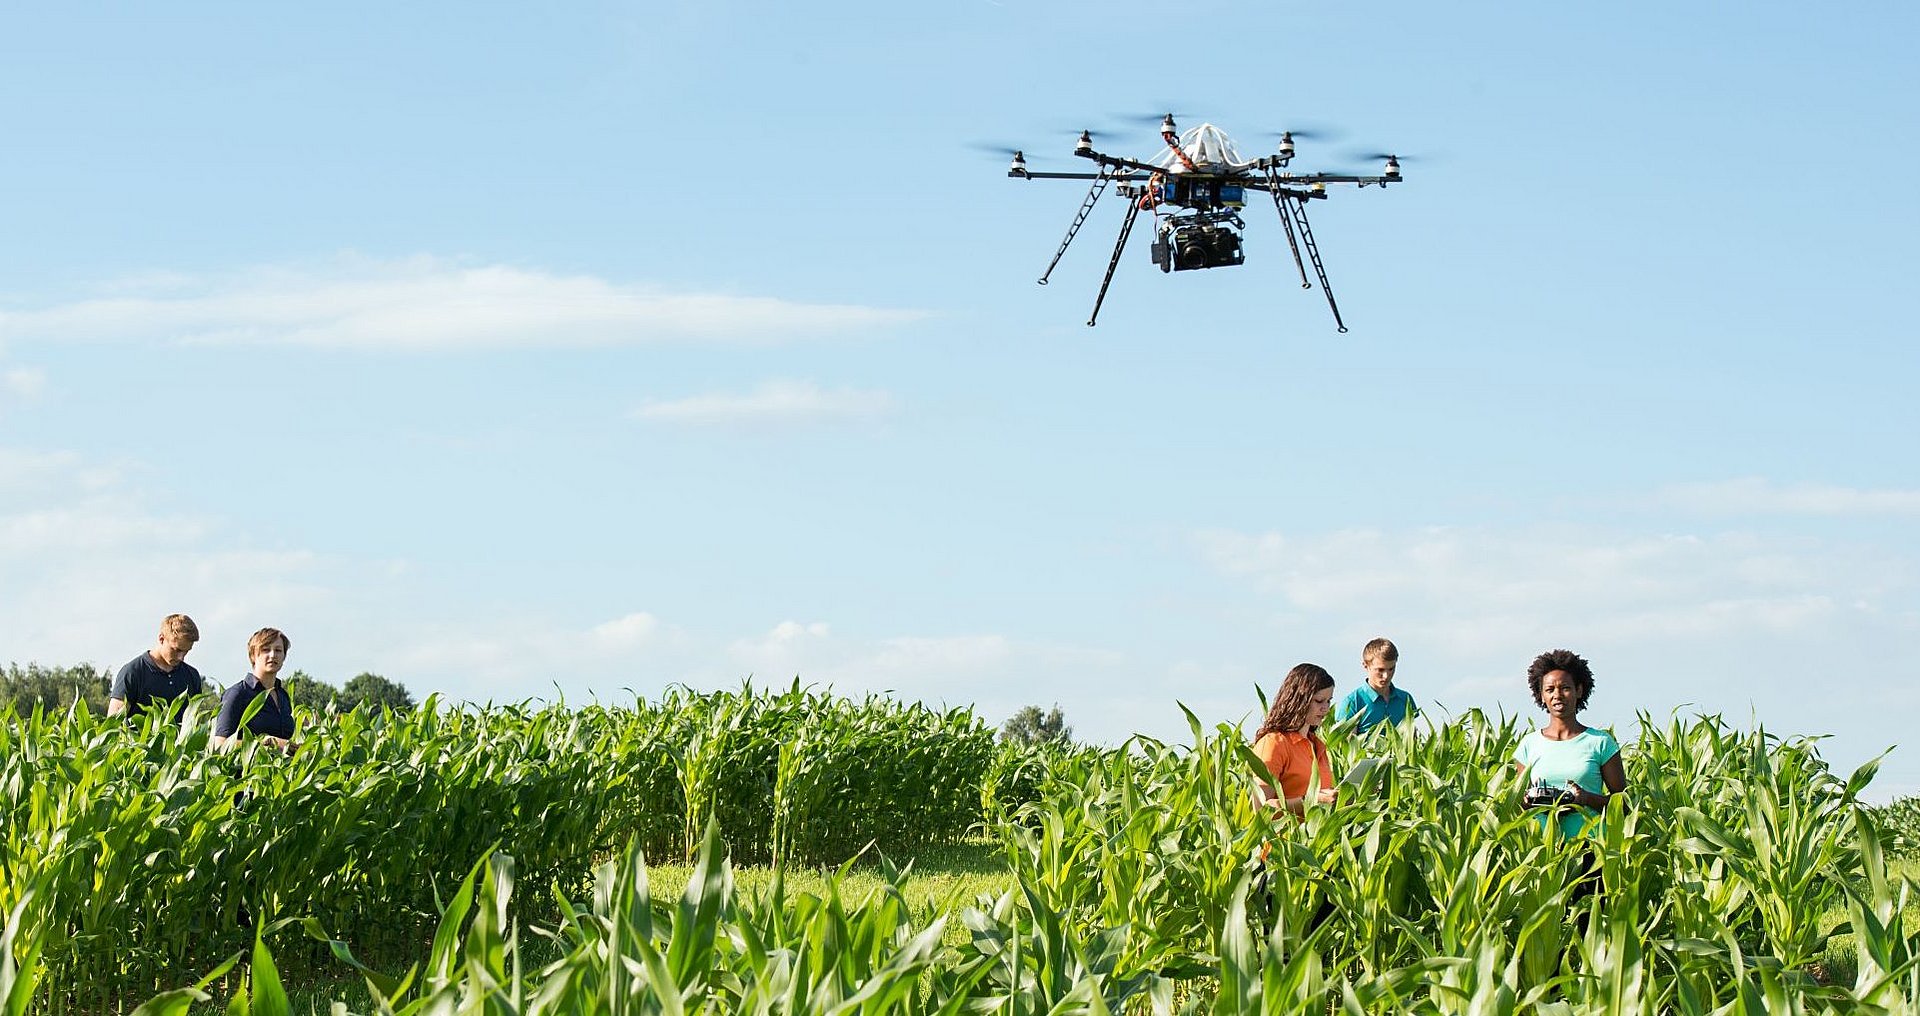 Agrarstudierende der Technischen Universität München stehen in Maisfeld und steuern Drohne mit Fernbedienung.